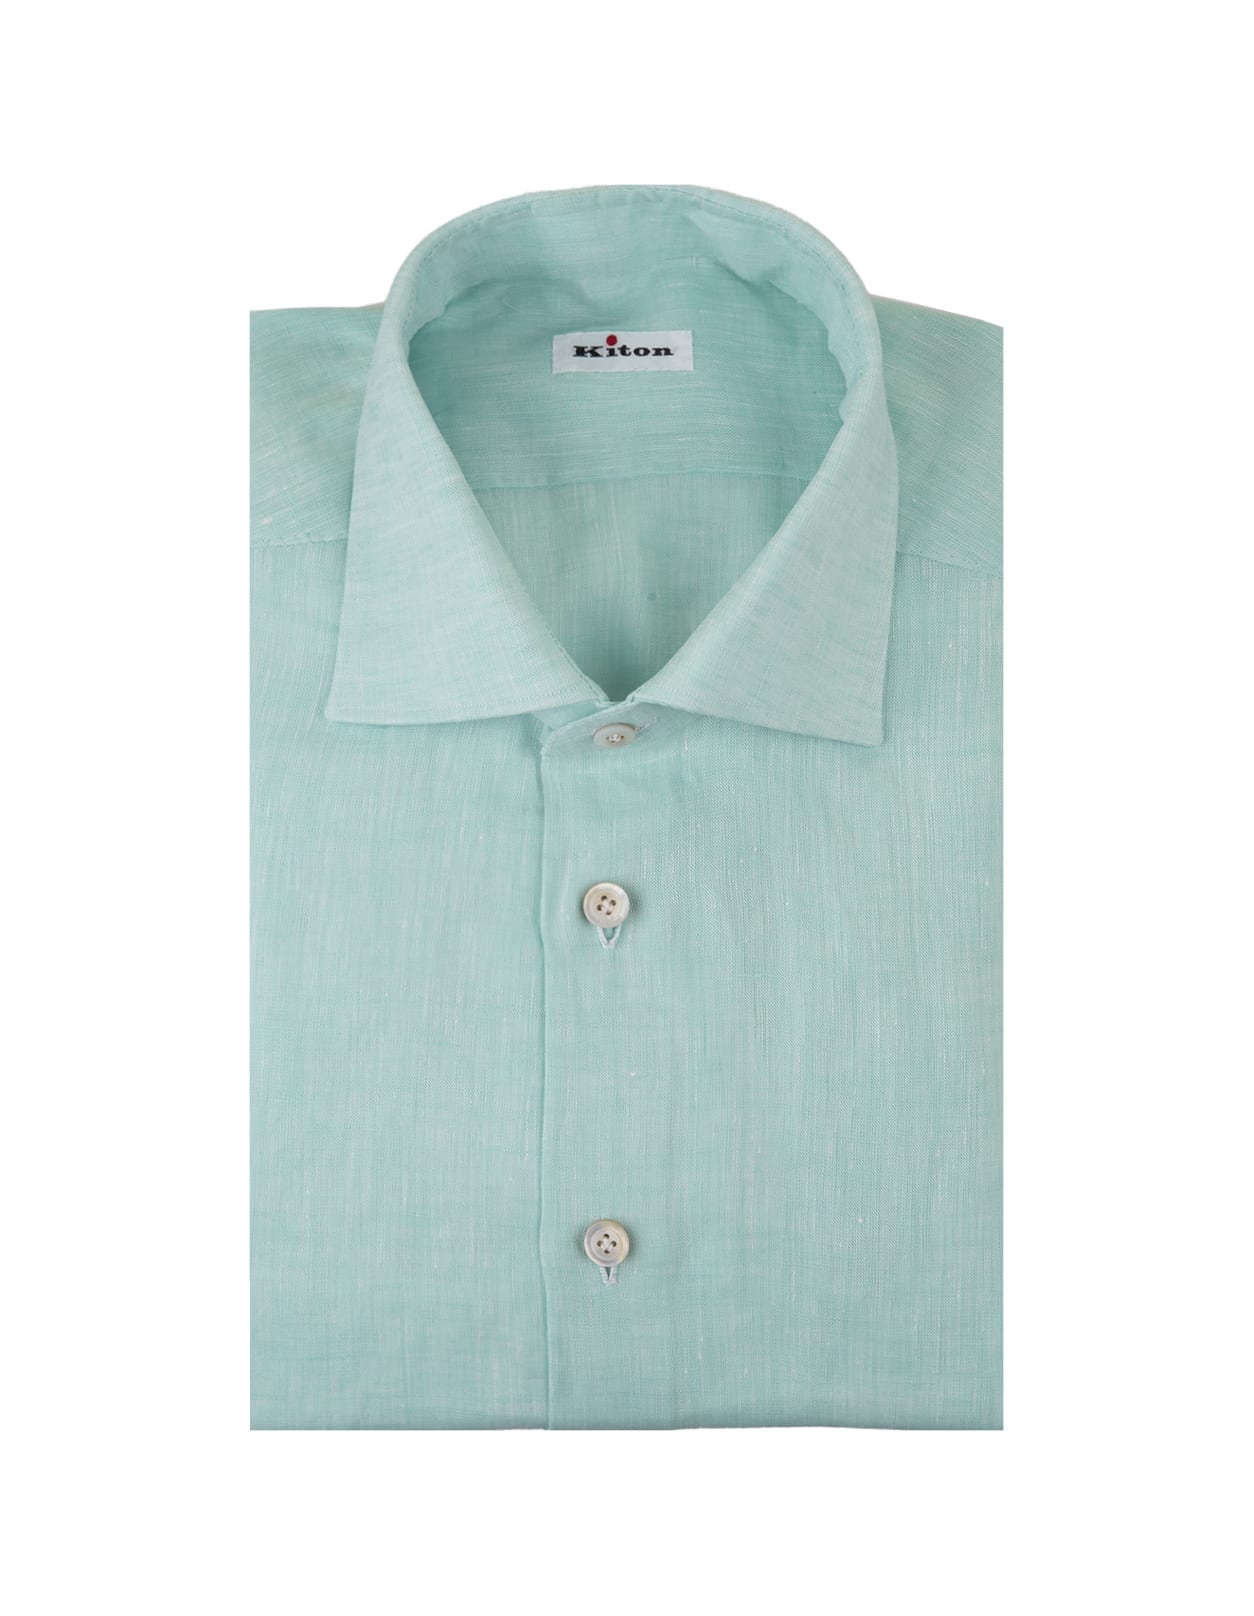 Aqua Green Linen Classic Shirt